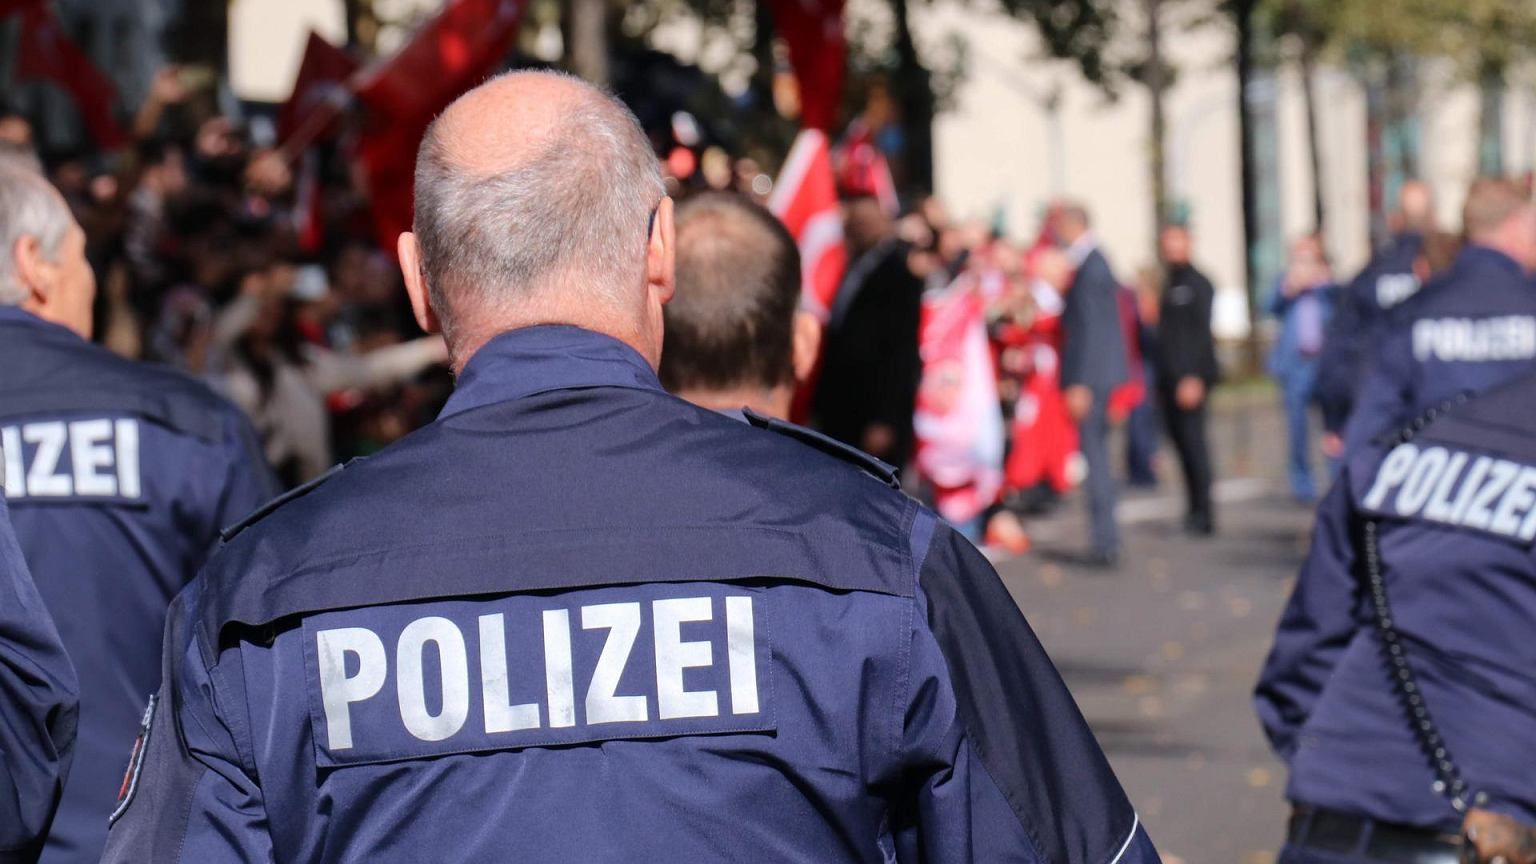 Γερμανία: Παρίστανε τον μπέιμπι σίτερ για να εκμεταλλεύεται παιδιά –  Αντιμετωπίζει 100 κατηγορίες σεξουαλικής κακοποίησης